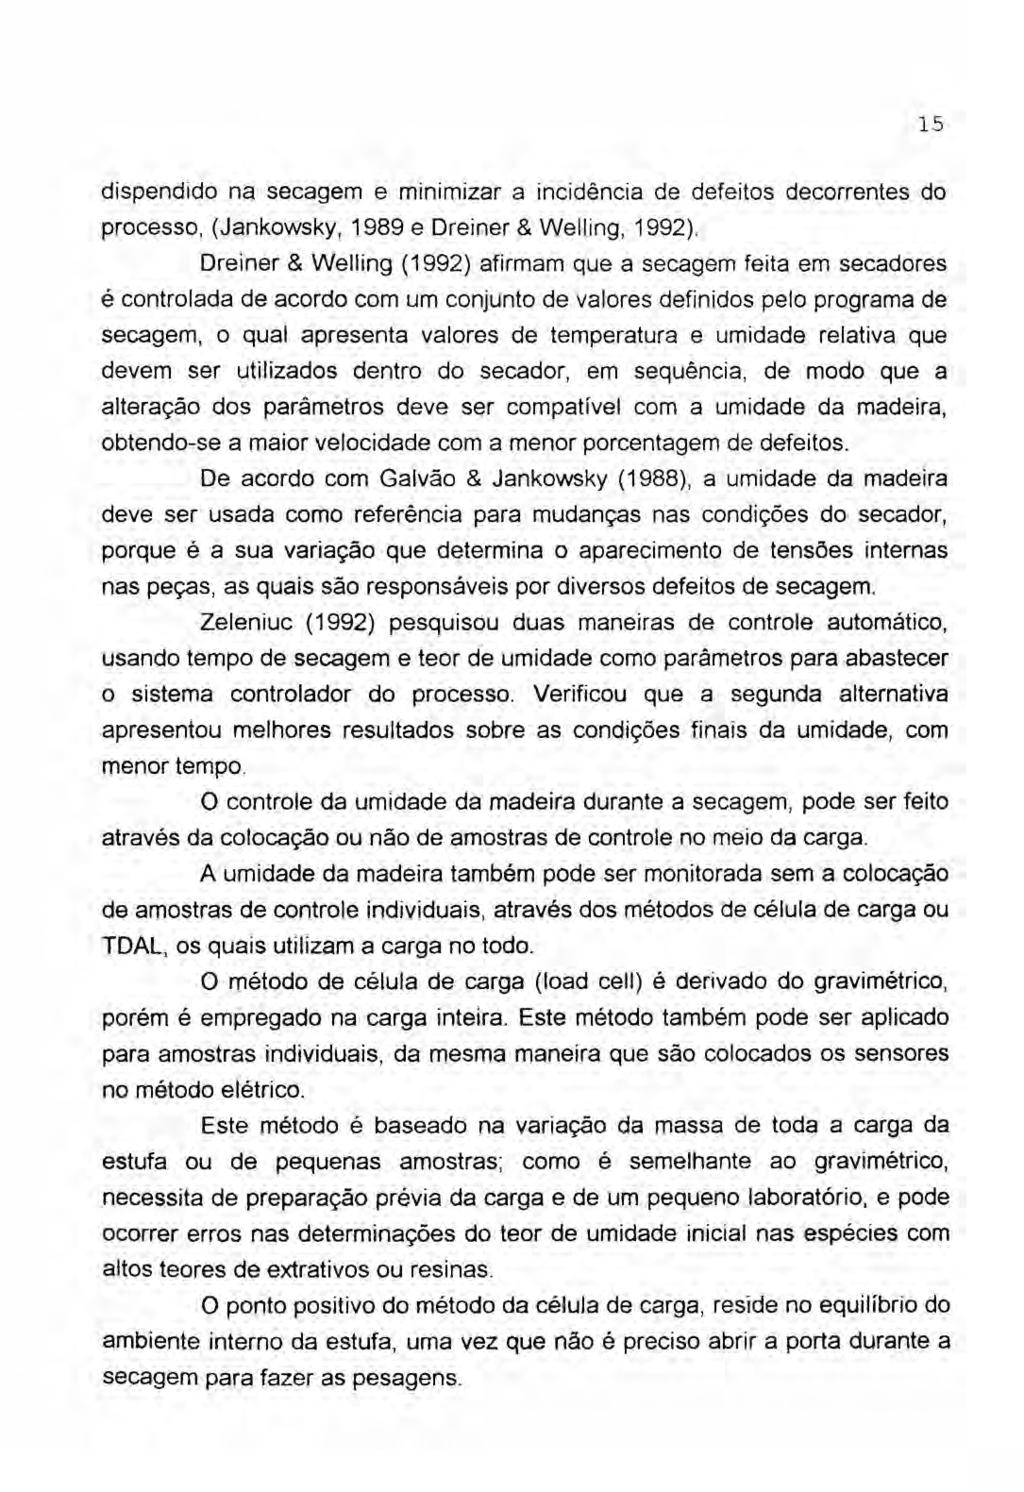 propriedades da Madeira ( resistência, anisotropia e higrosc by Leonardo  Nogueira Bianchi